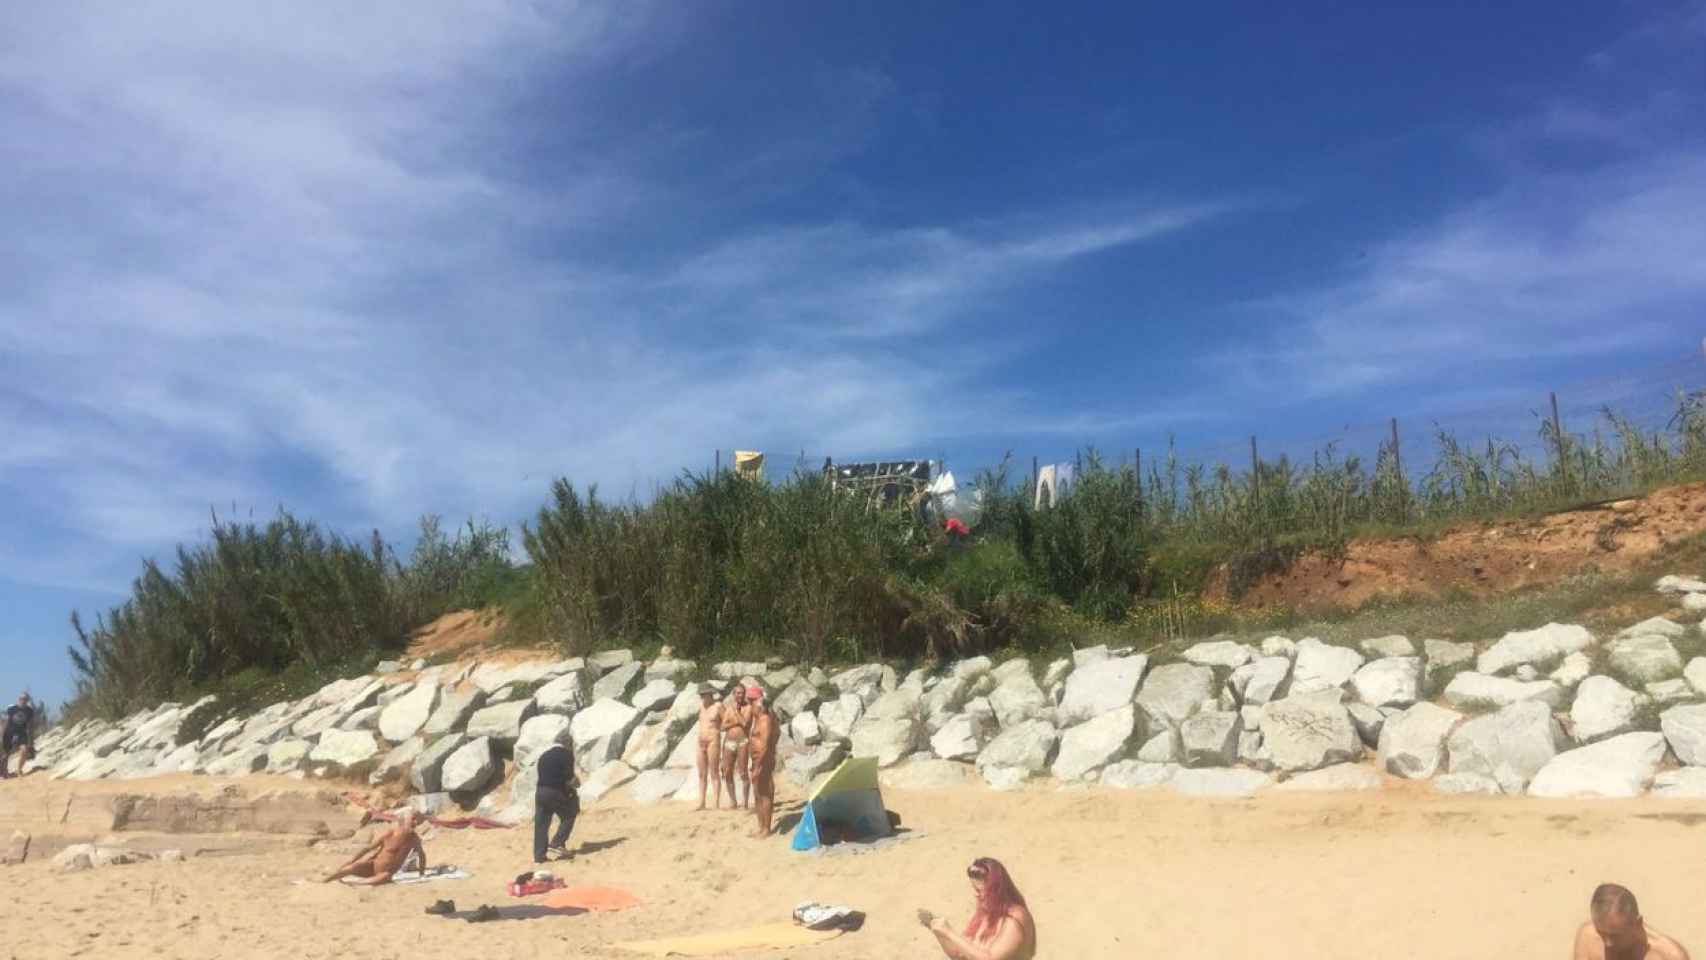 Zona nudista en la playa de la Mar Bella / Elisenda Fernández